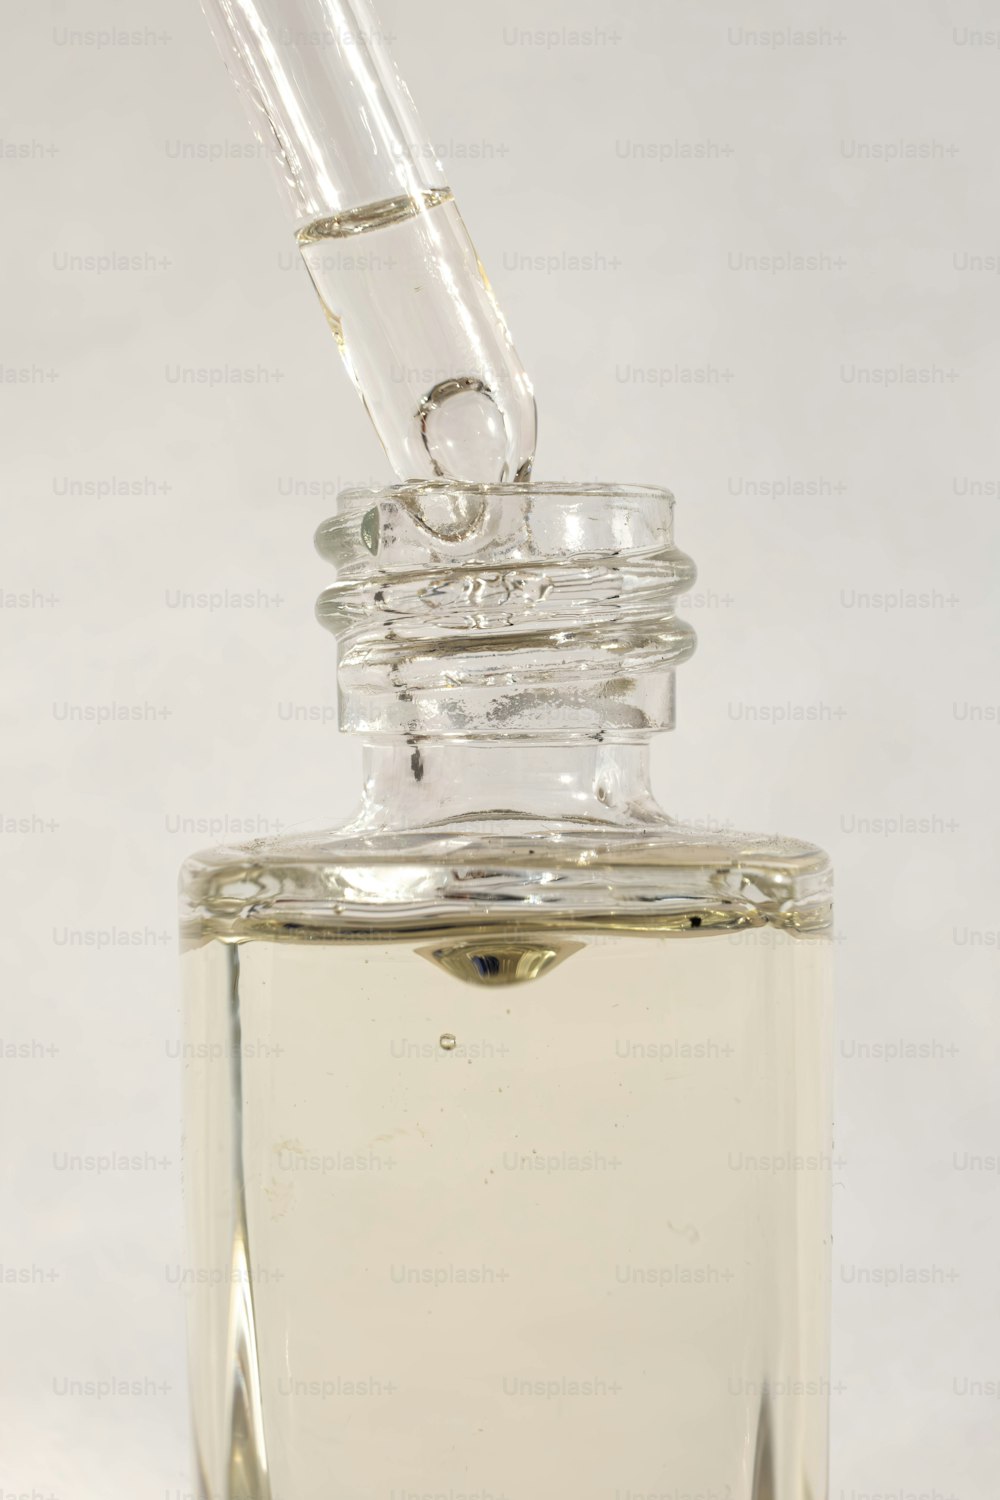 eine durchsichtige Glasflasche, aus der eine kleine Pfeife herausragt